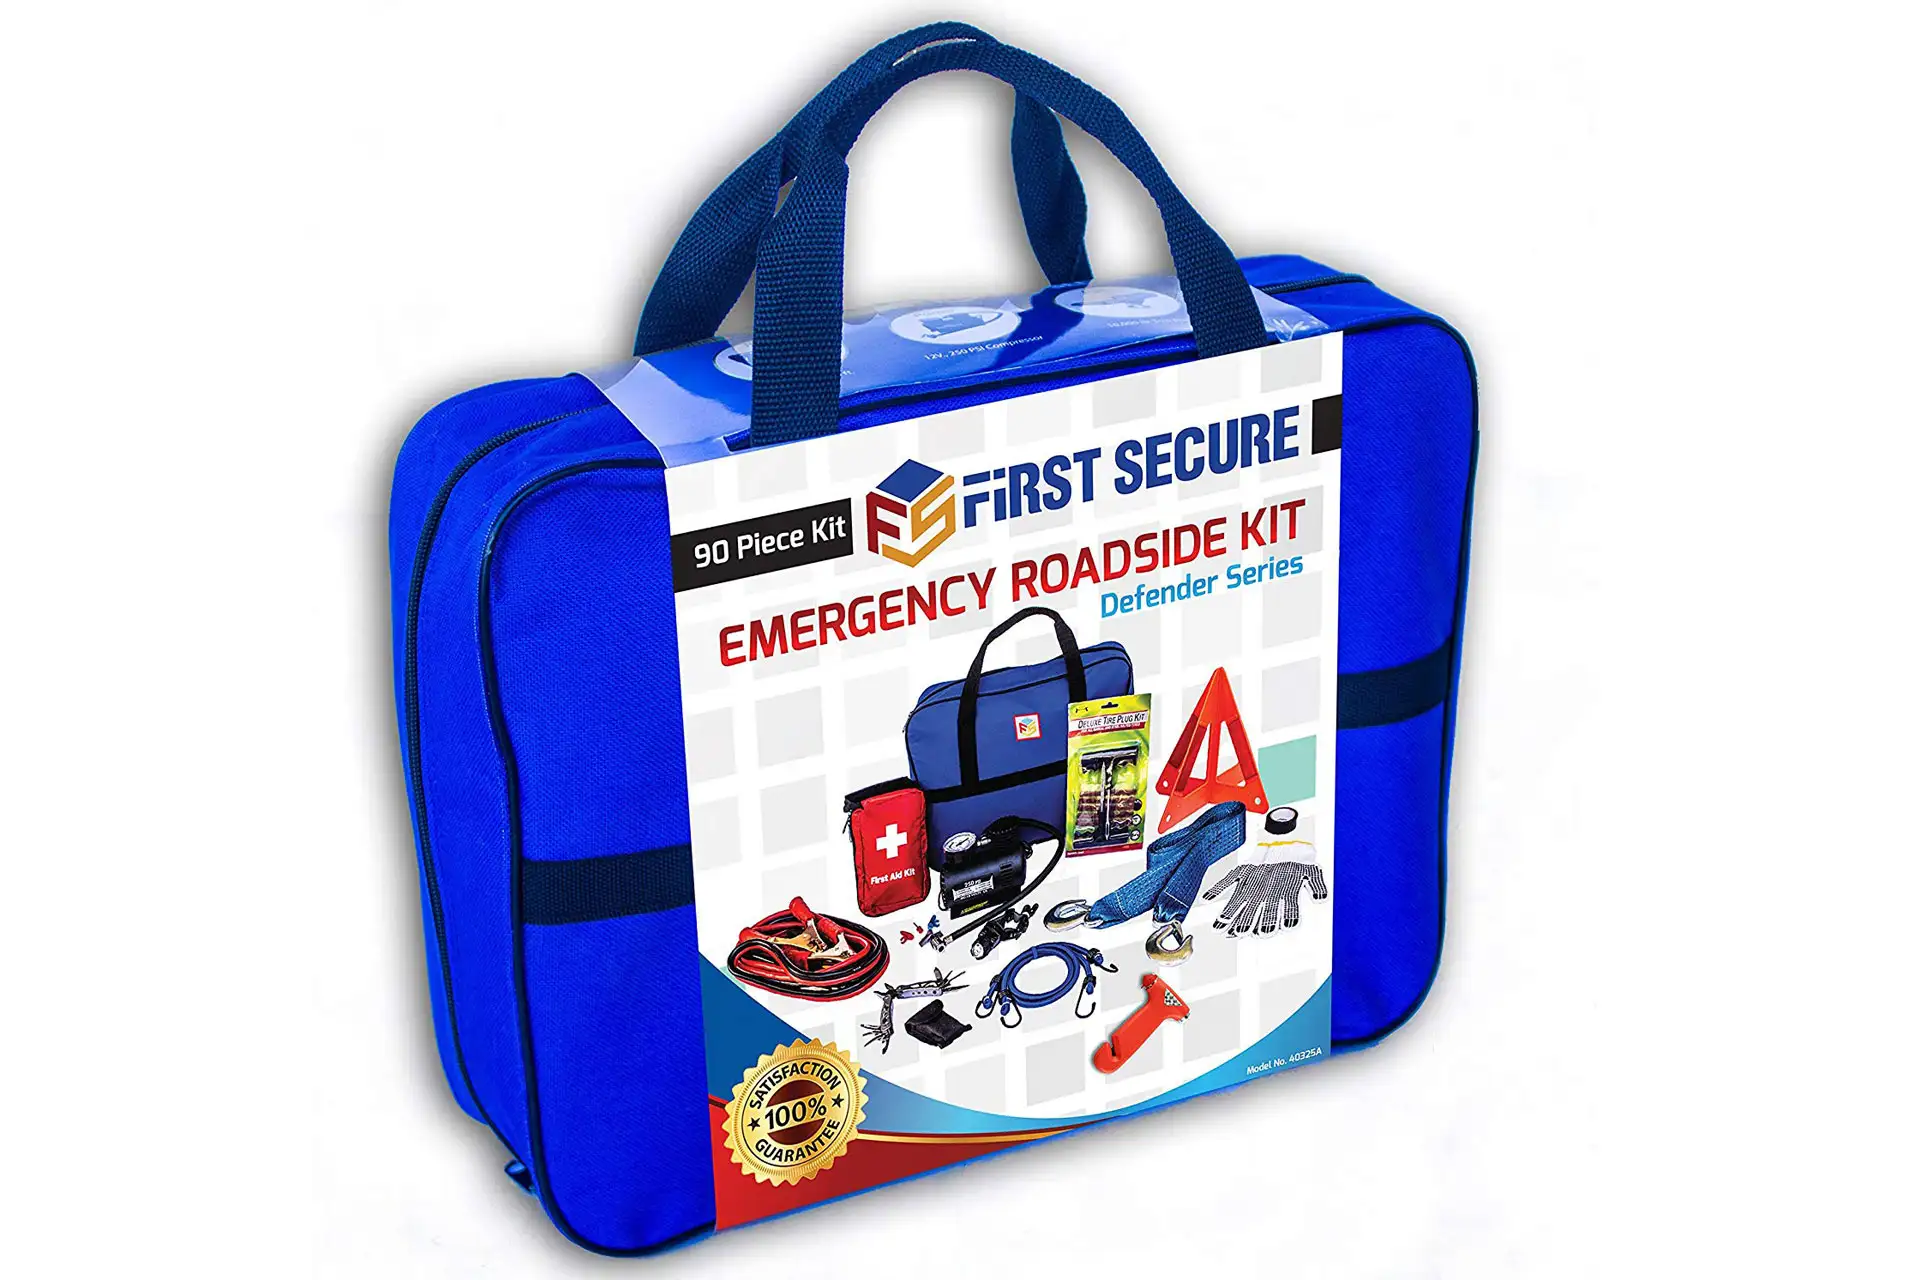 Emergency Car Kit